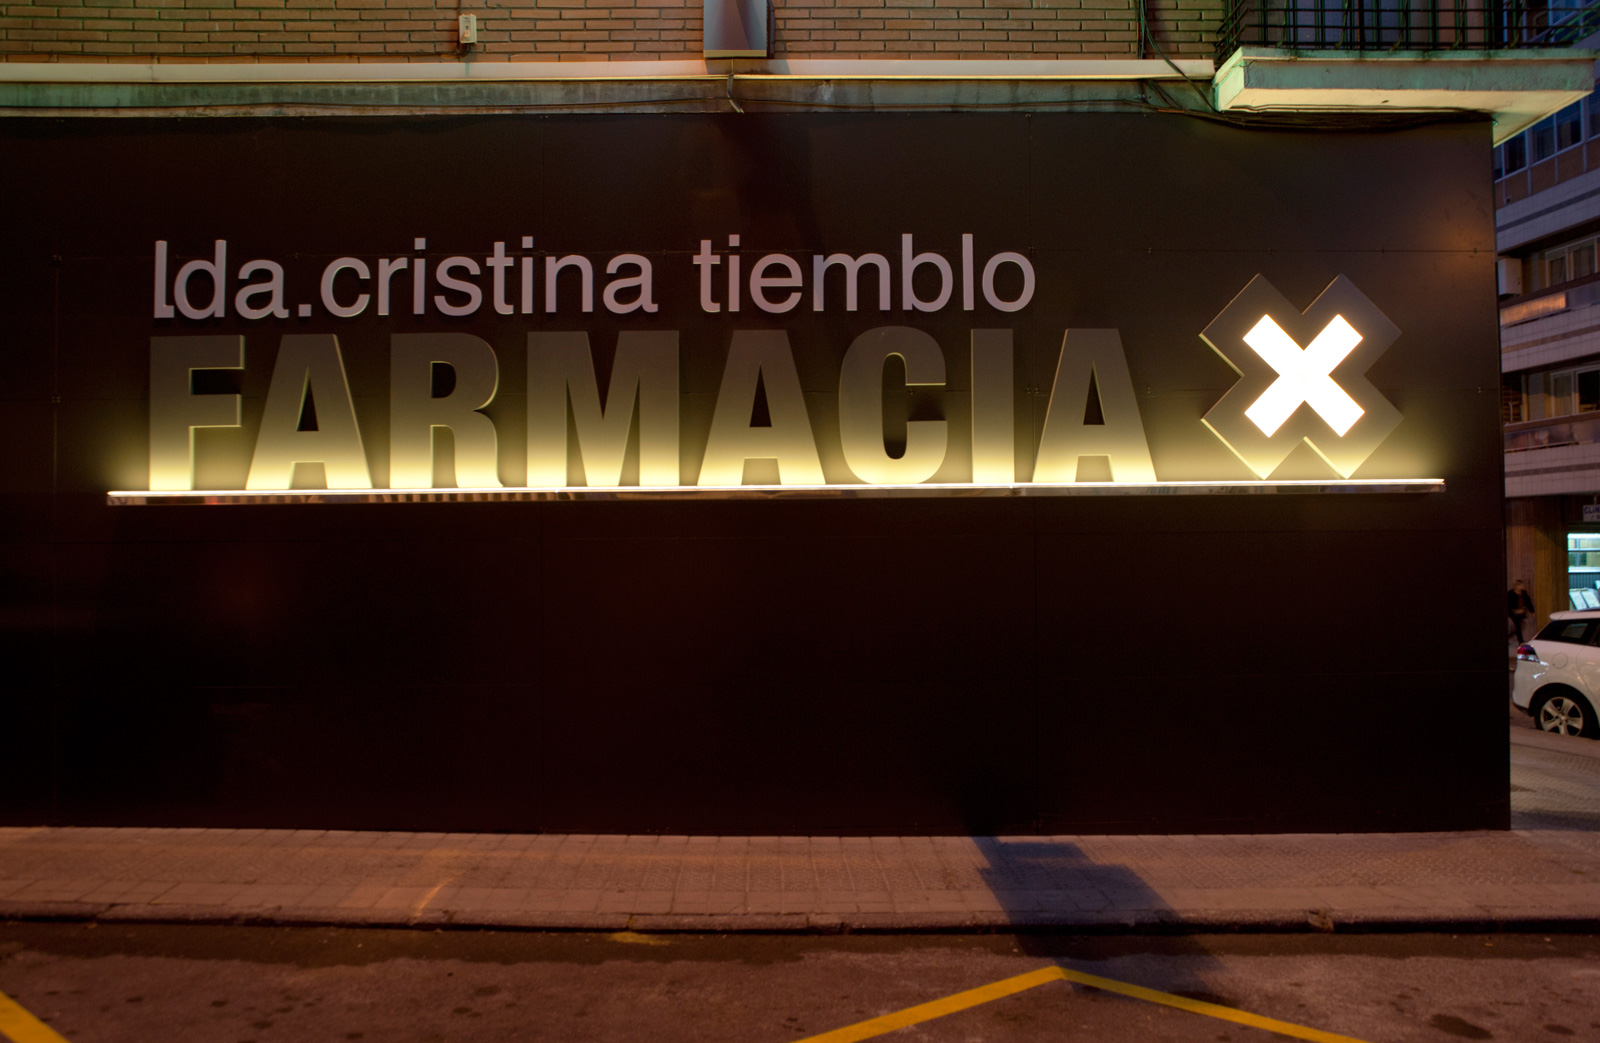 Sube Interiorismo Bilbao diseño farmacia